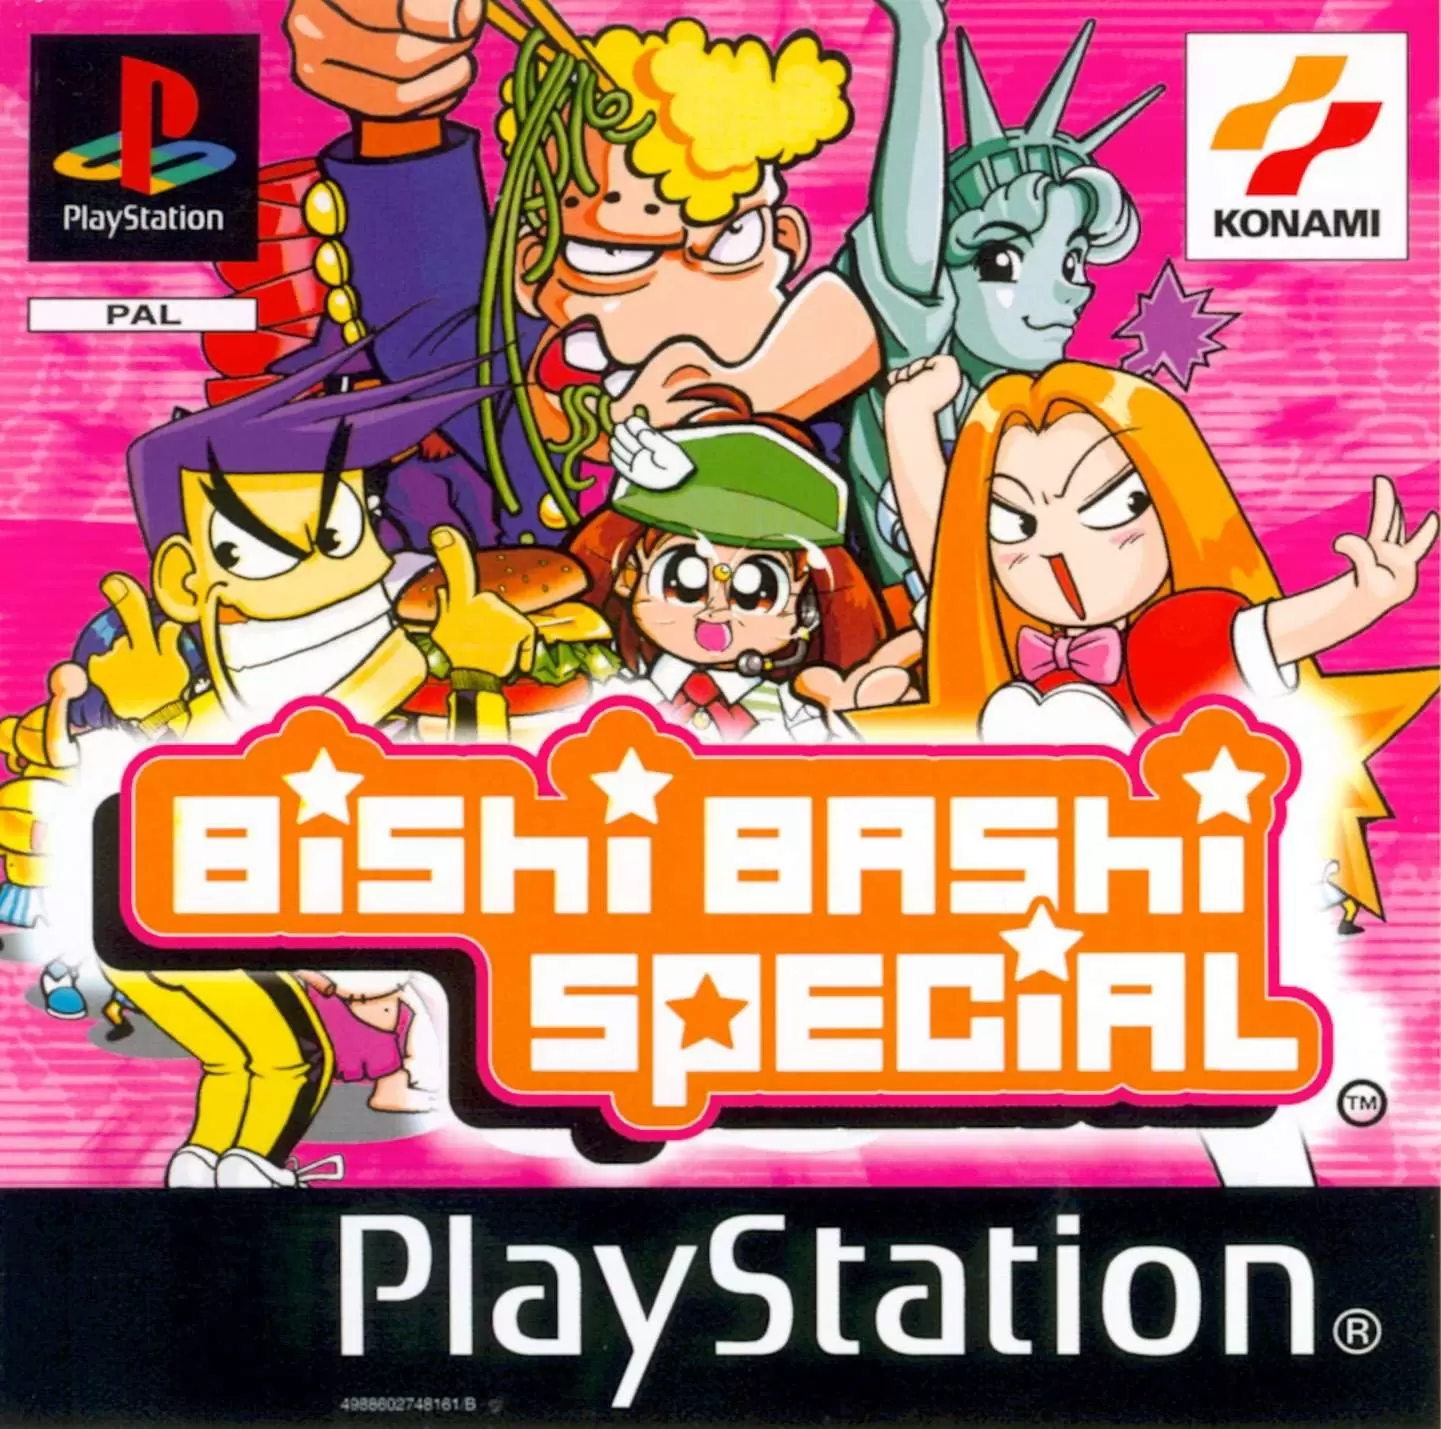 Playstation games - Bishi Bashi Special